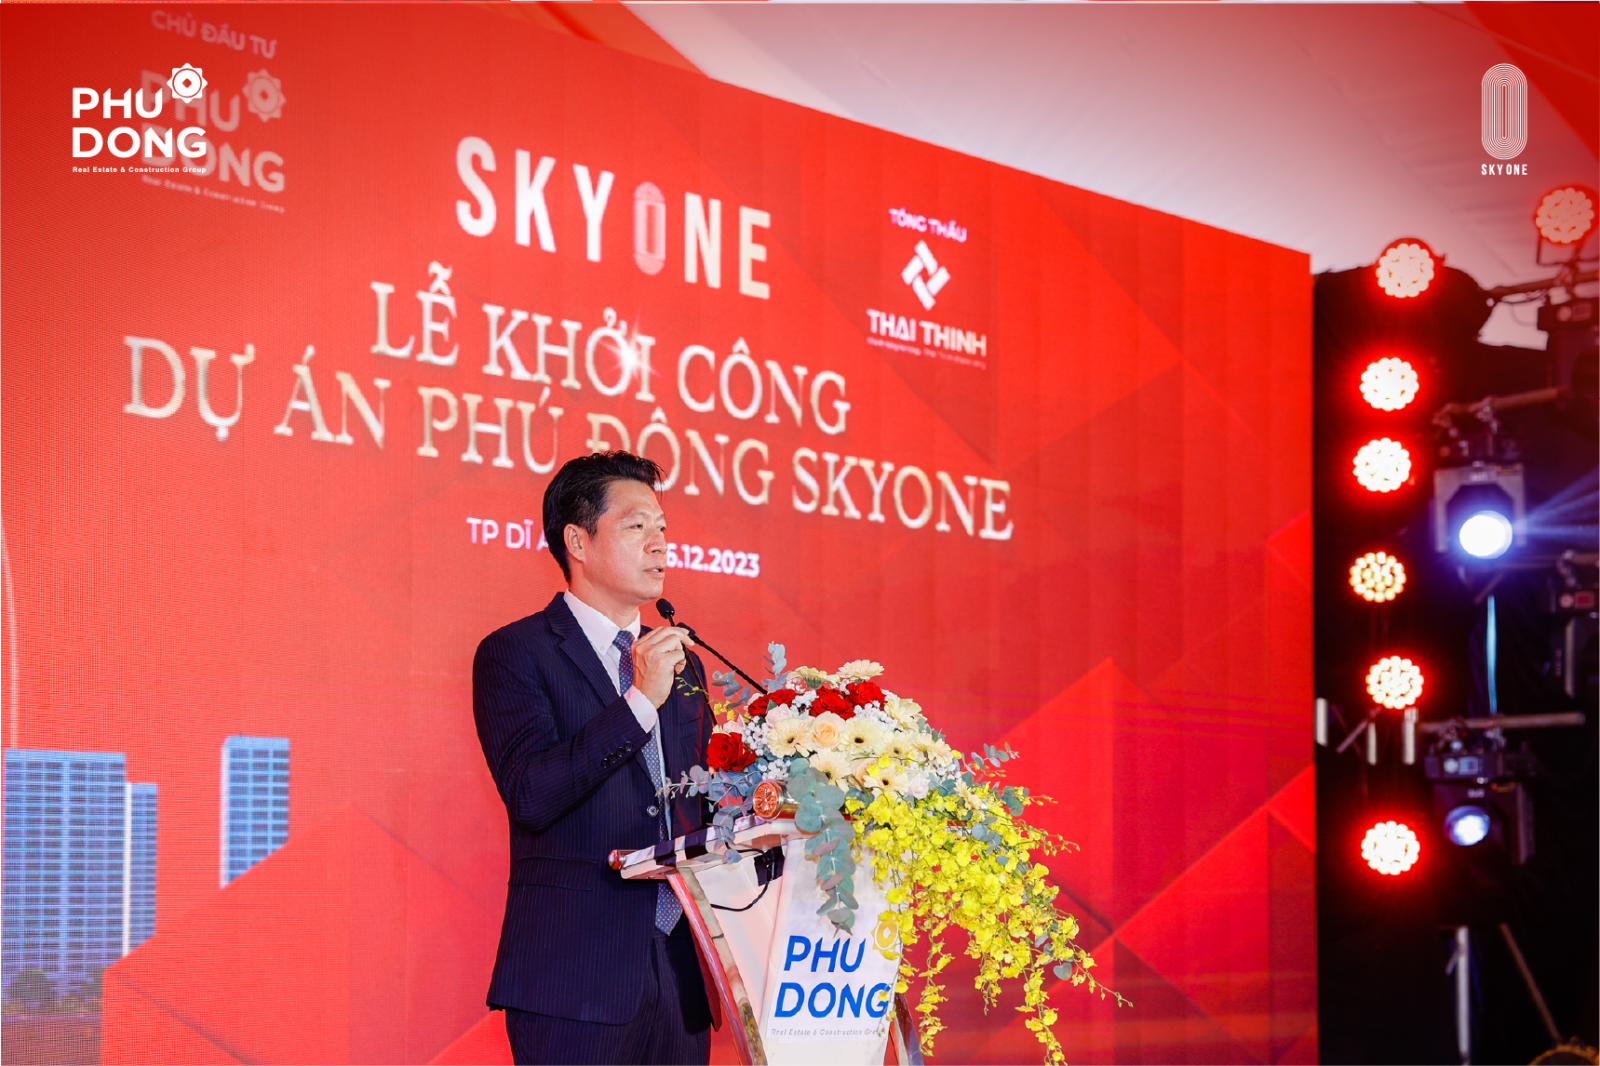 Ông Ngô Quang Phúc - Tổng giám đốc Phú Đông Group chia sẻ tại buổi lễ khởi công